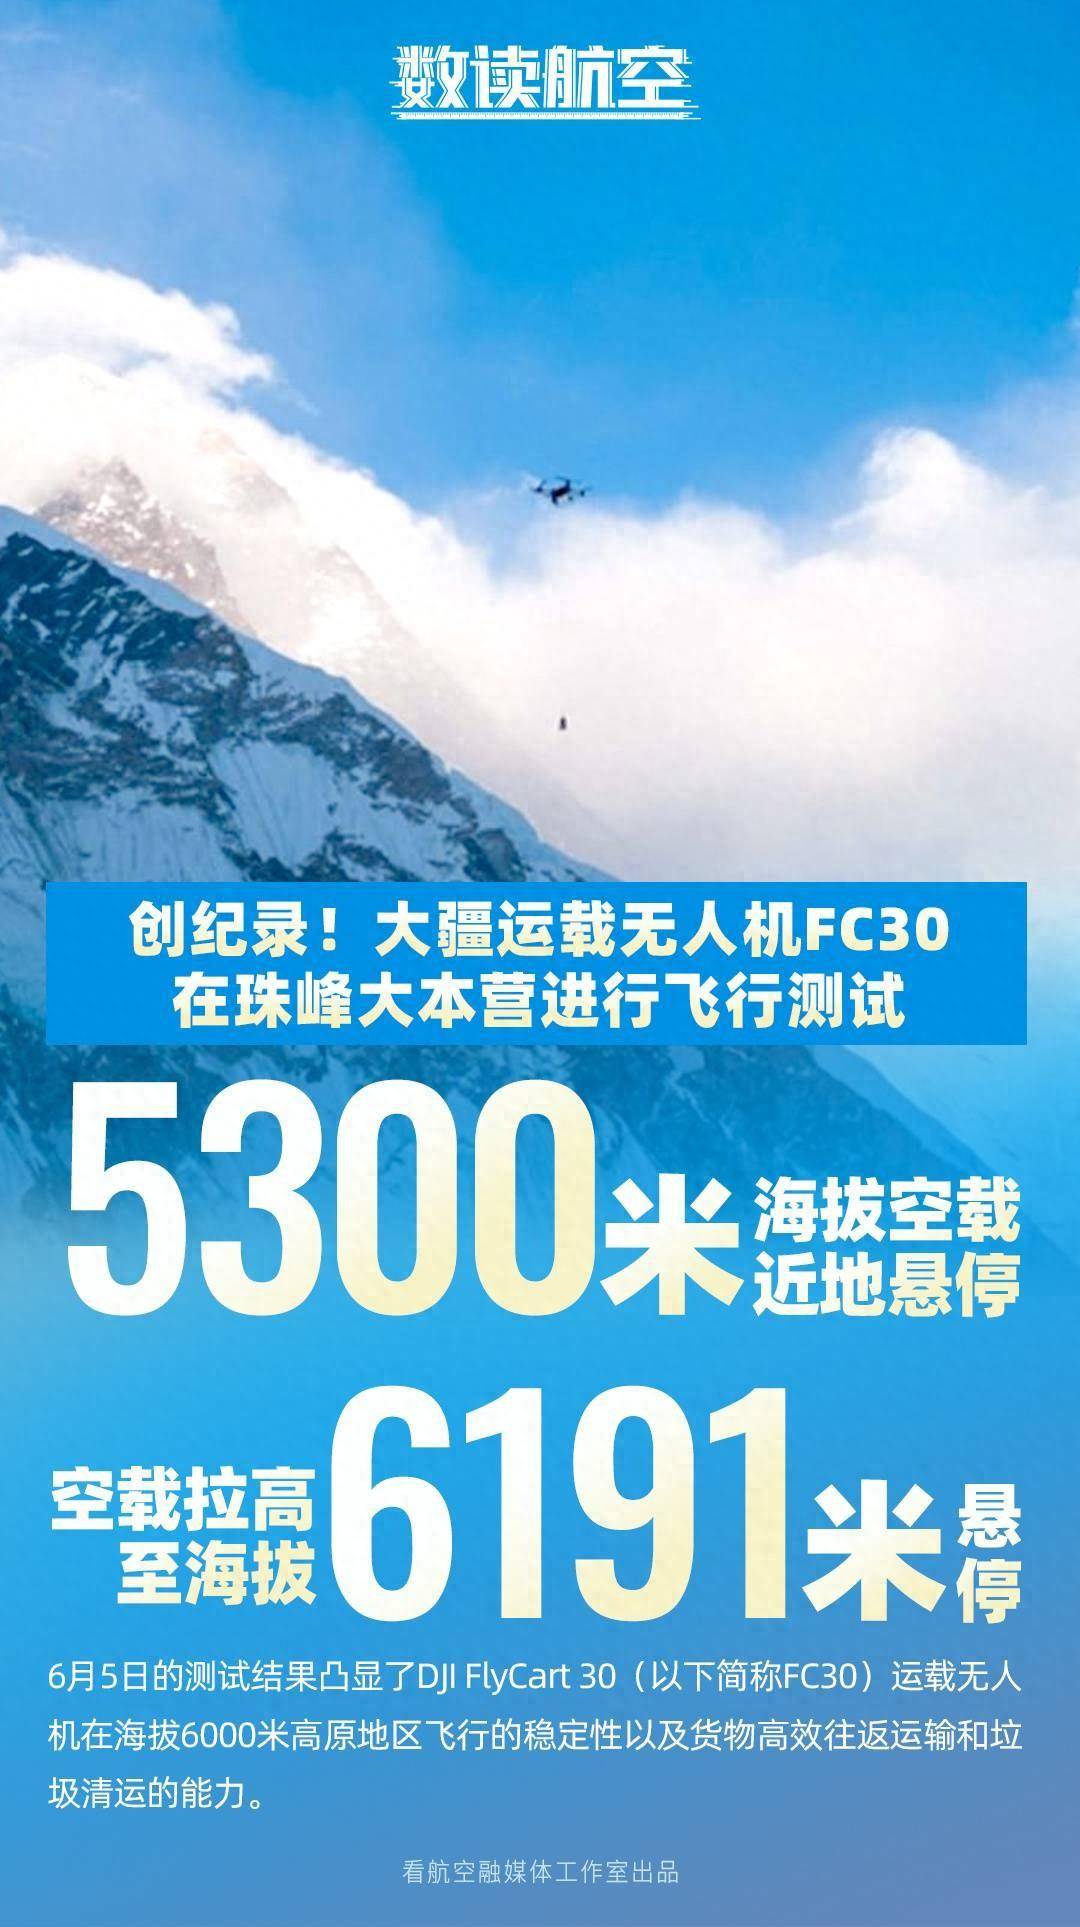 【数读航空】创记录！大疆运载无人机FC30在珠峰大本营进行飞行测试